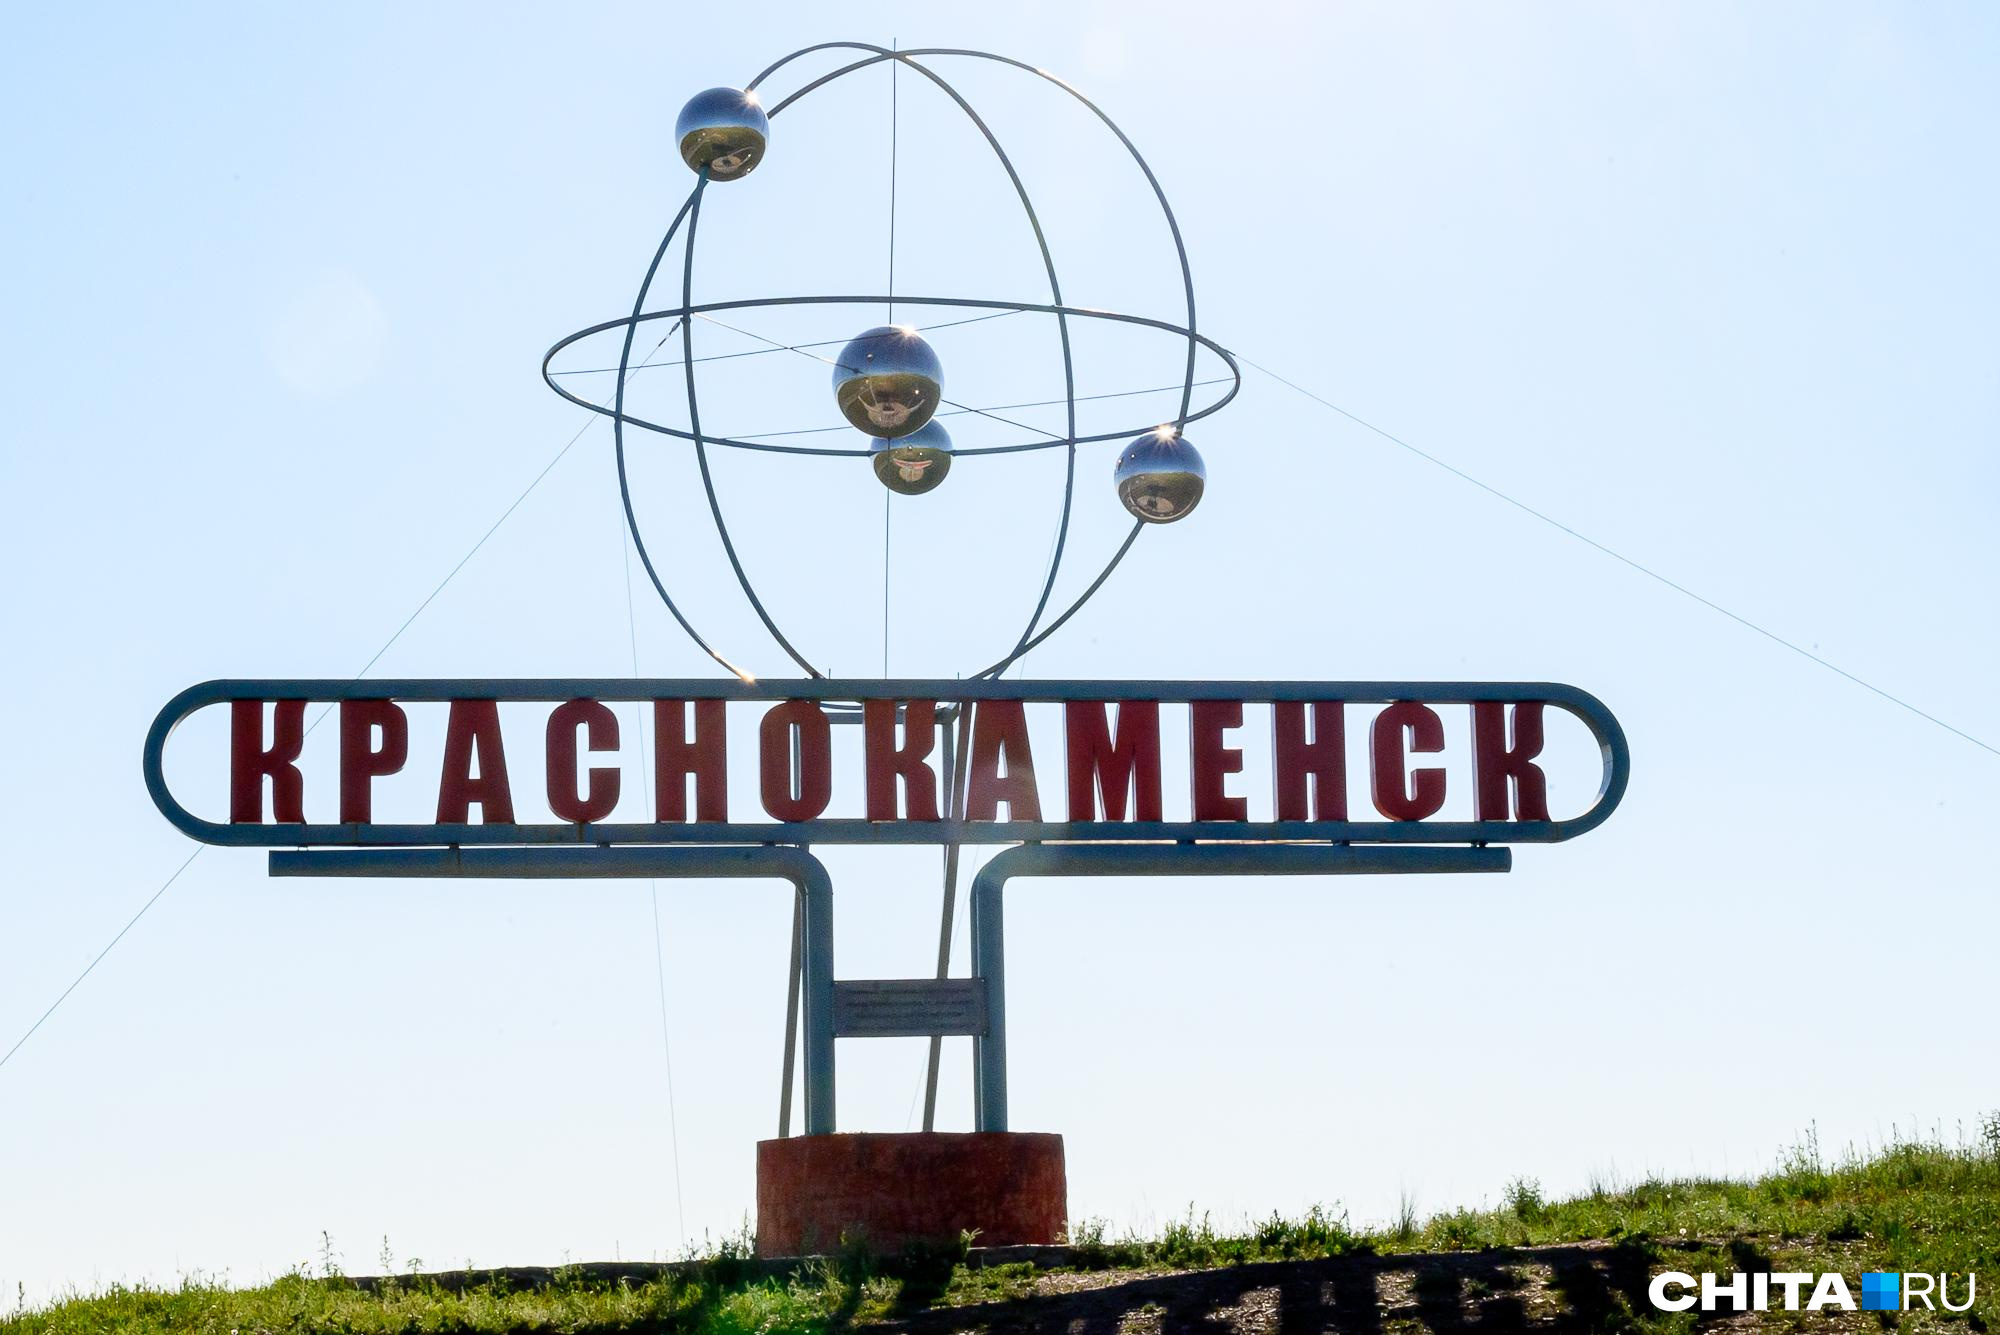 Следователи начали проверку после падения мальчика с балкона в Краснокаменске